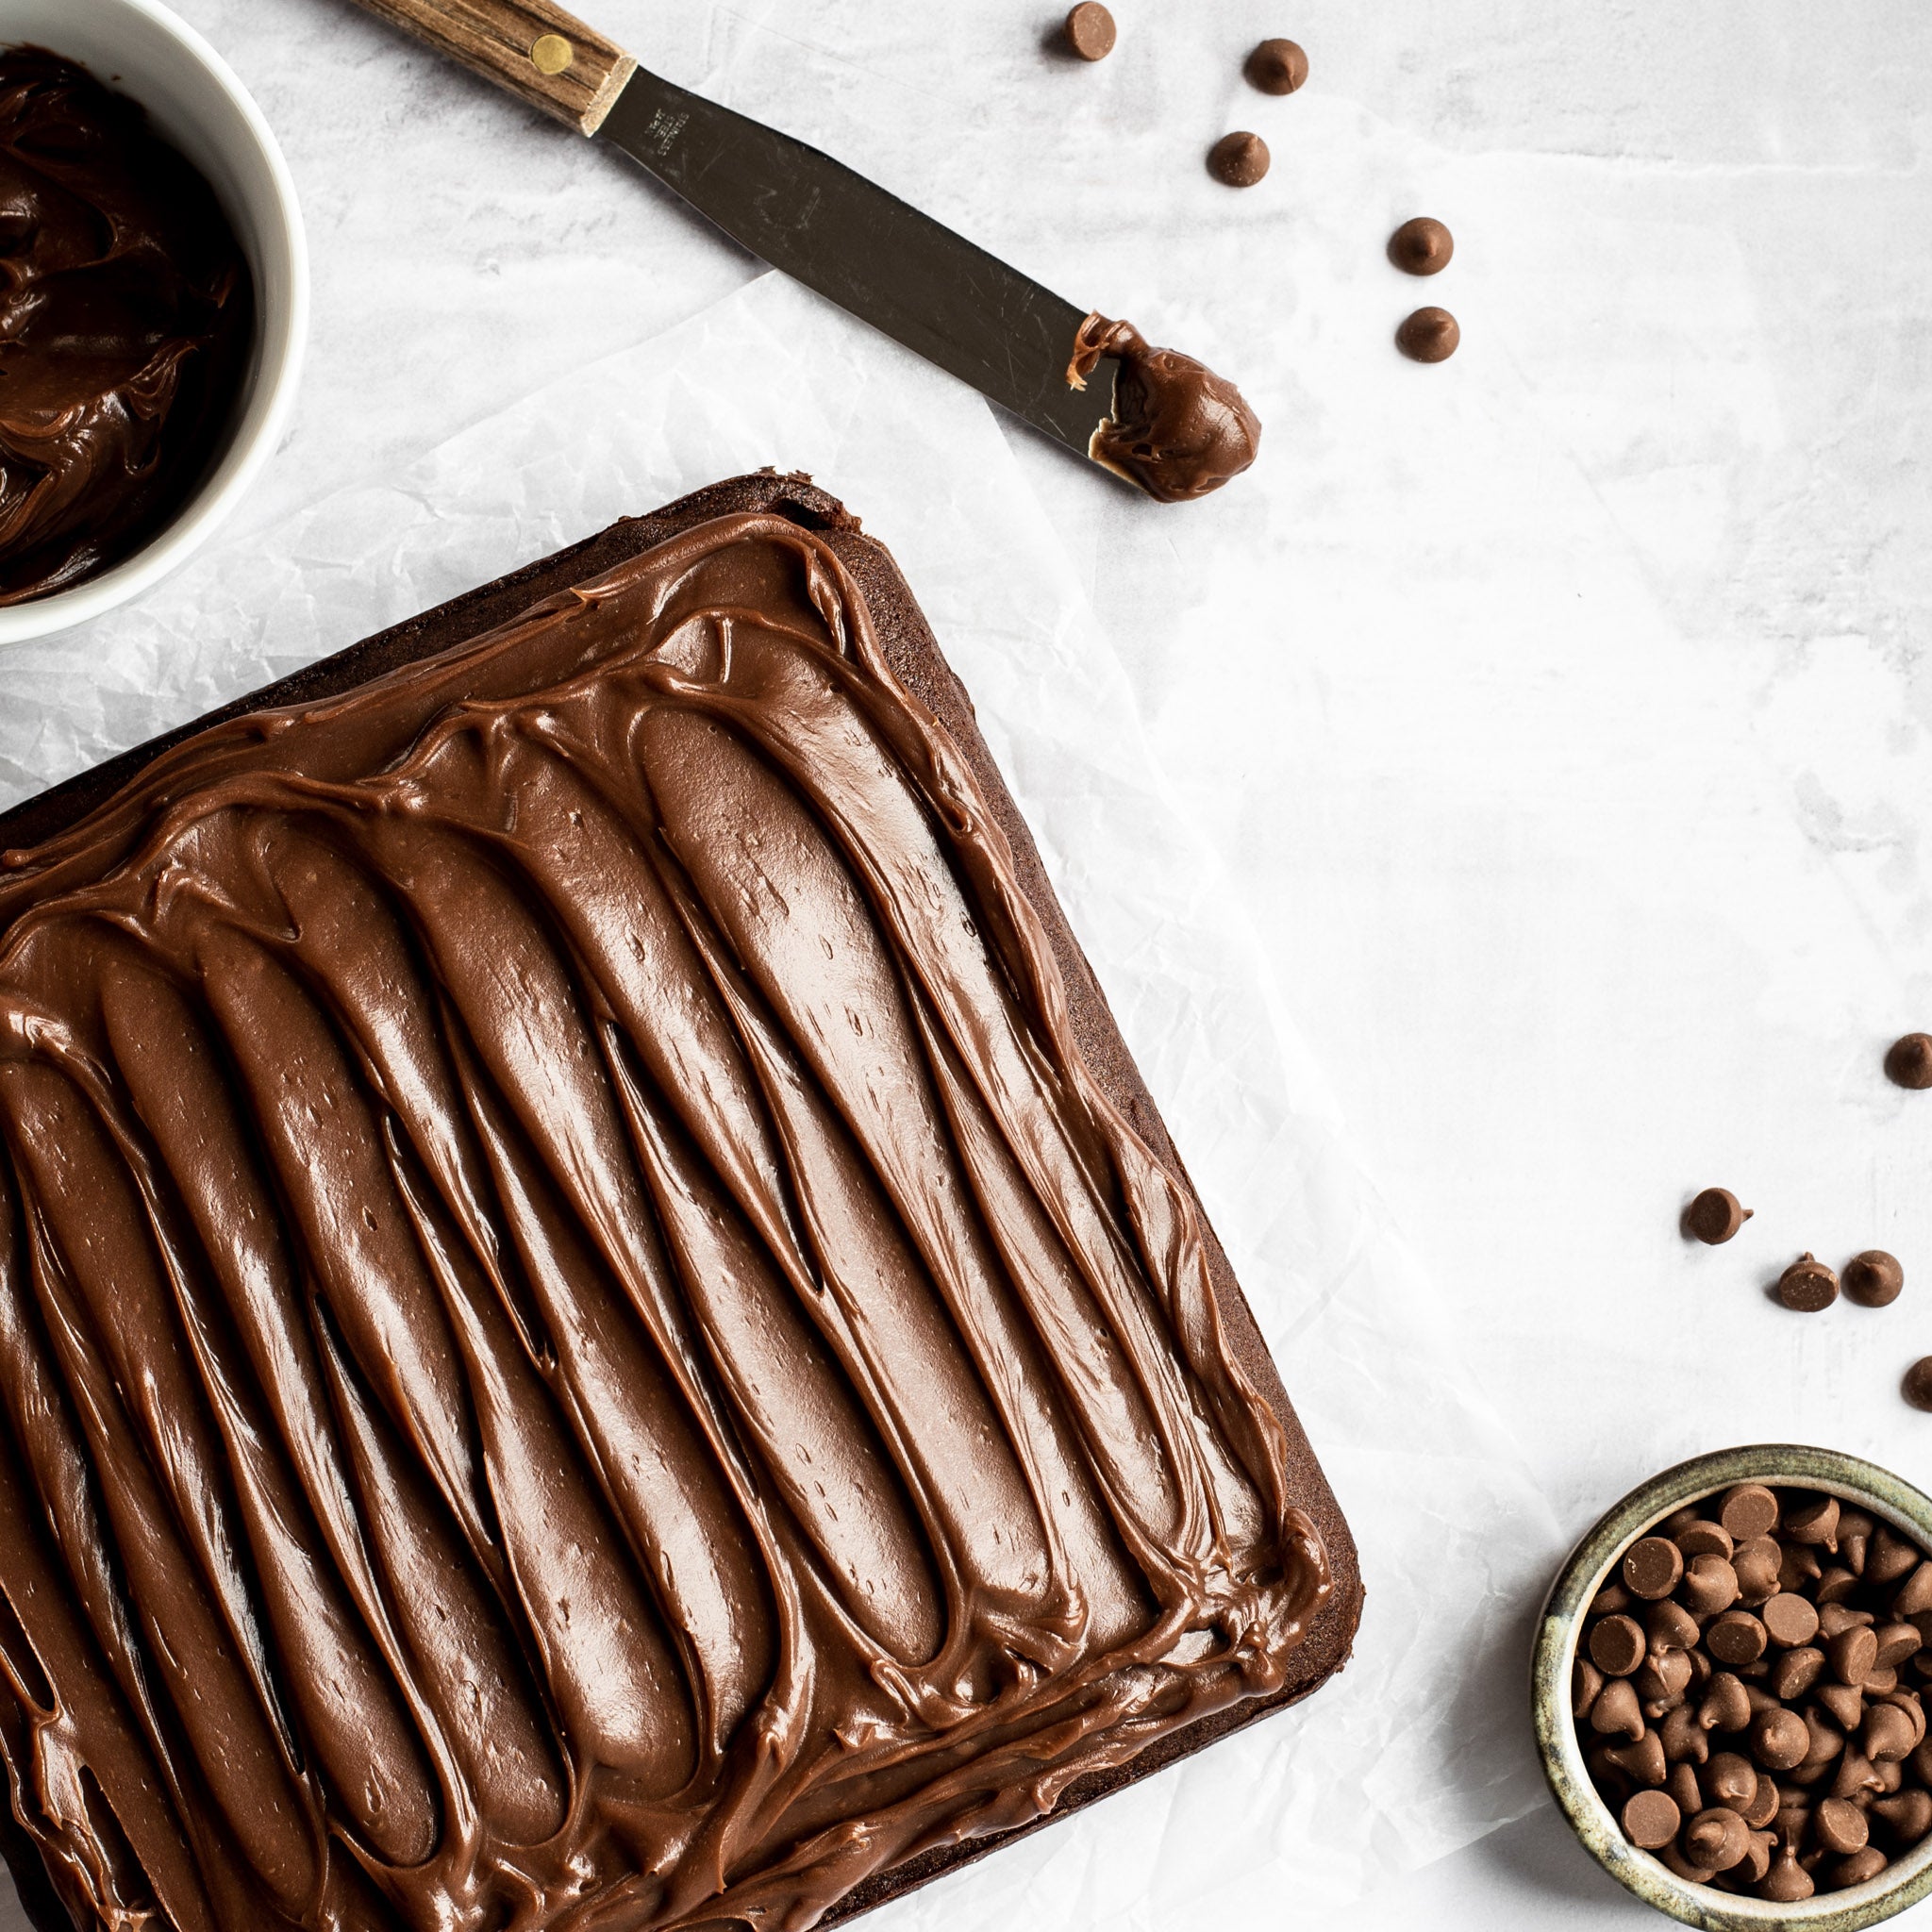 GF-Chocolate-Tray-Bake-SQUARE-3.jpg